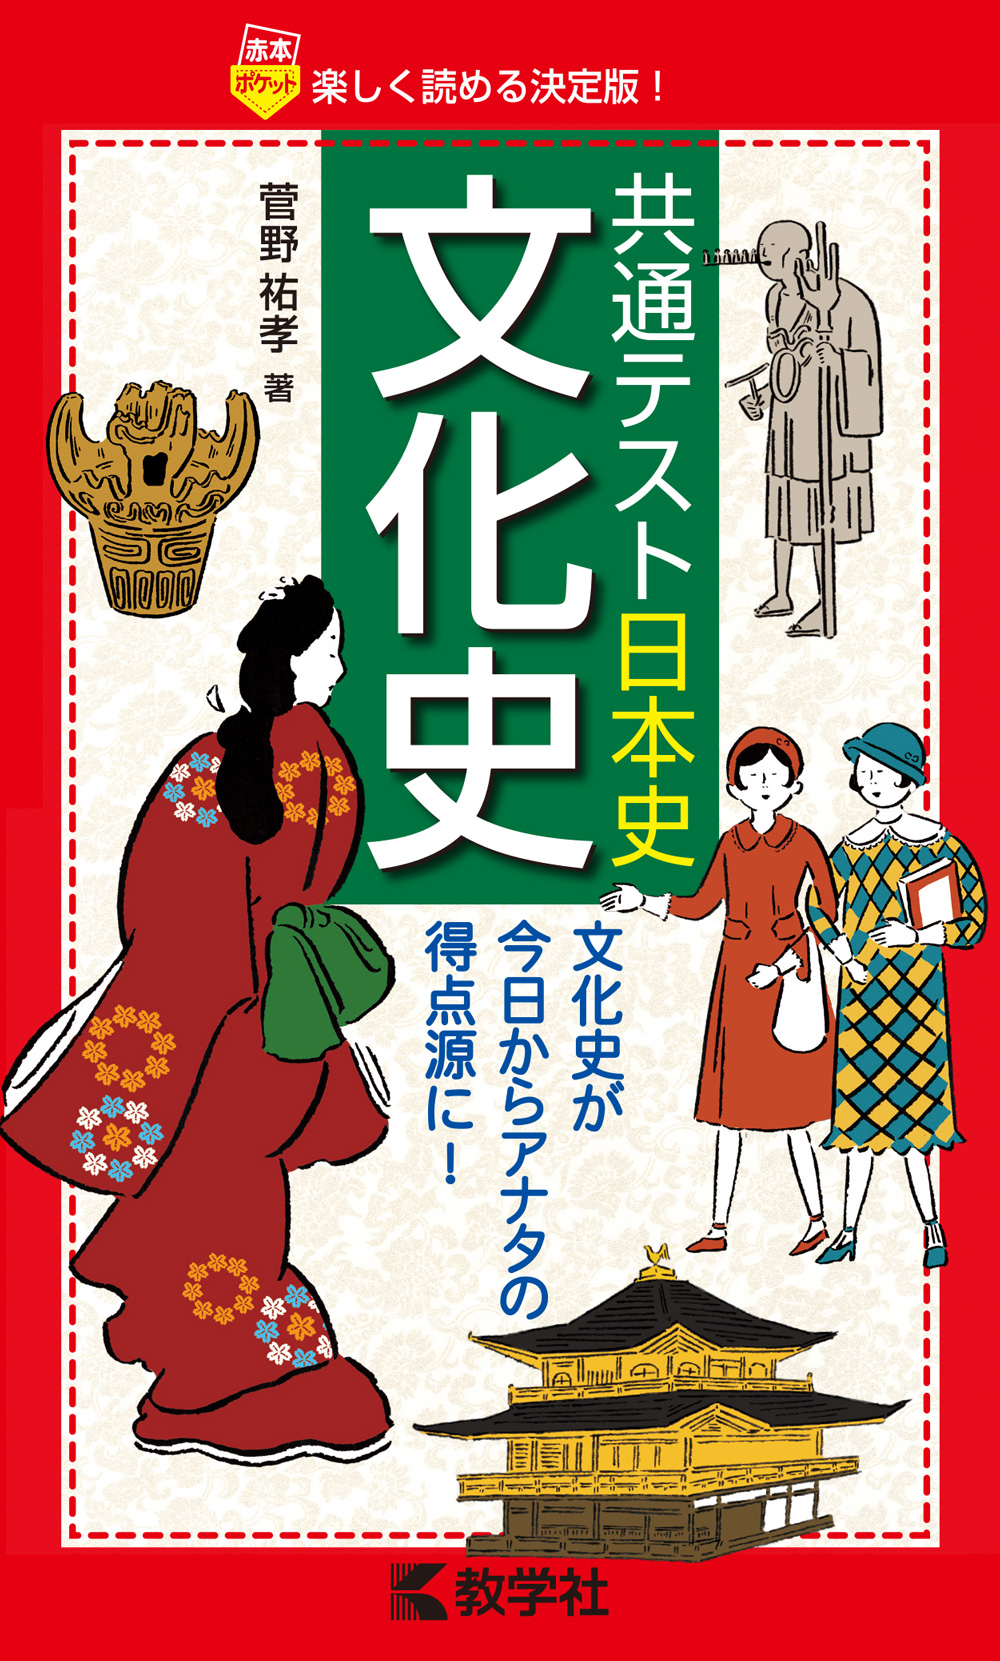 共通テスト日本史 文化史 赤本 の教学社 大学過去問題集